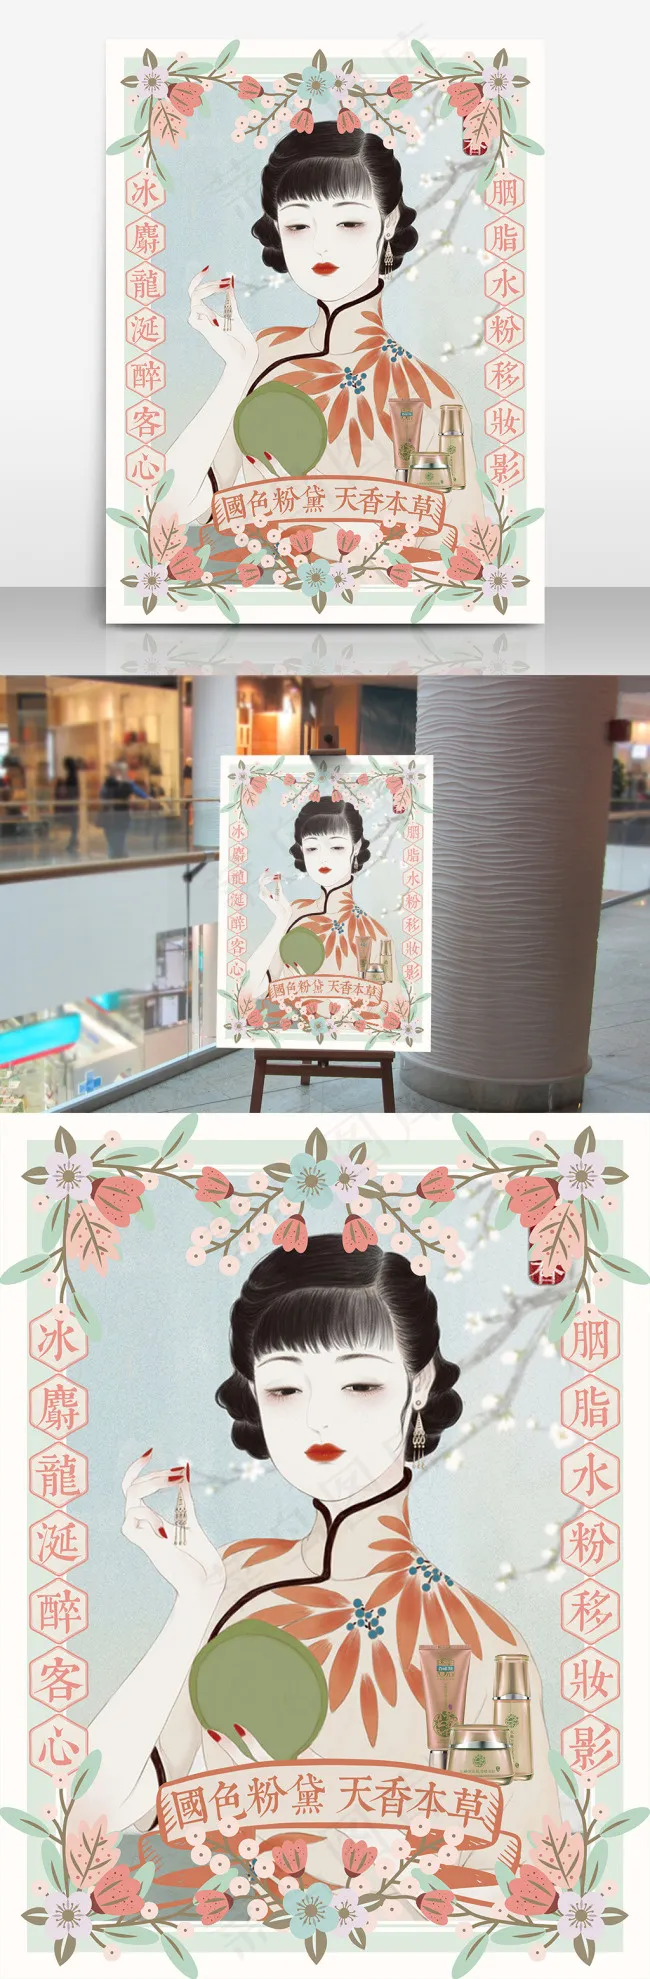 传统中国风民国风插画手绘小姐姐鲜花海报设